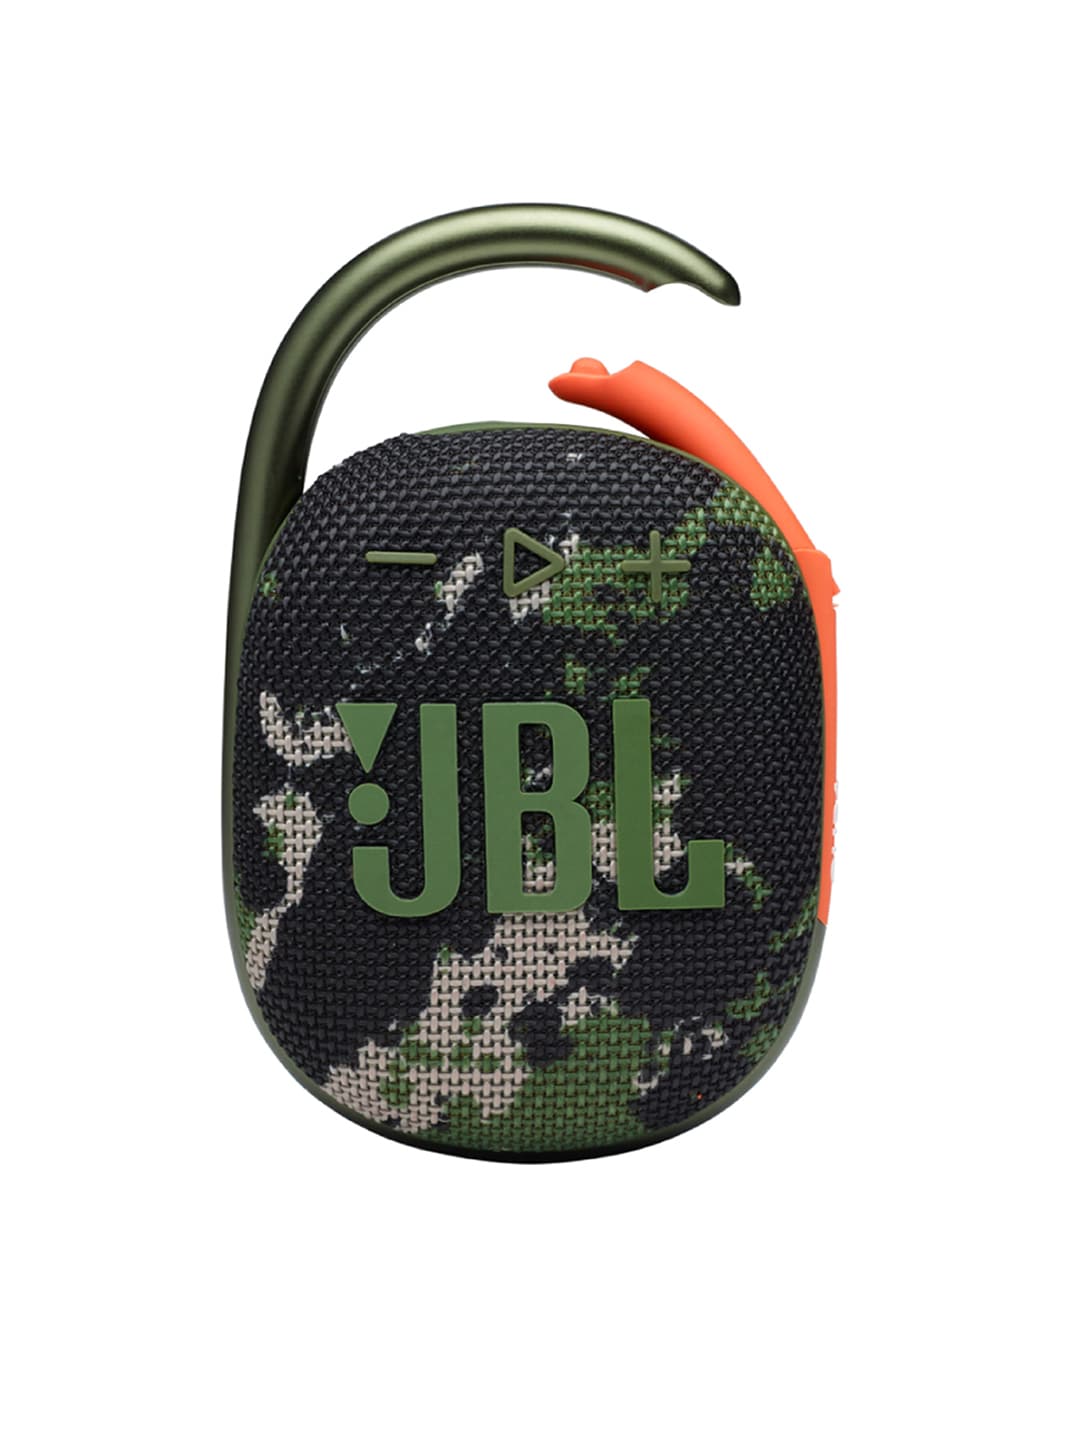 JBL Black Clip 4 Ultra-Portable IP67 Water & Dustproof Bluetooth Speaker Price in India